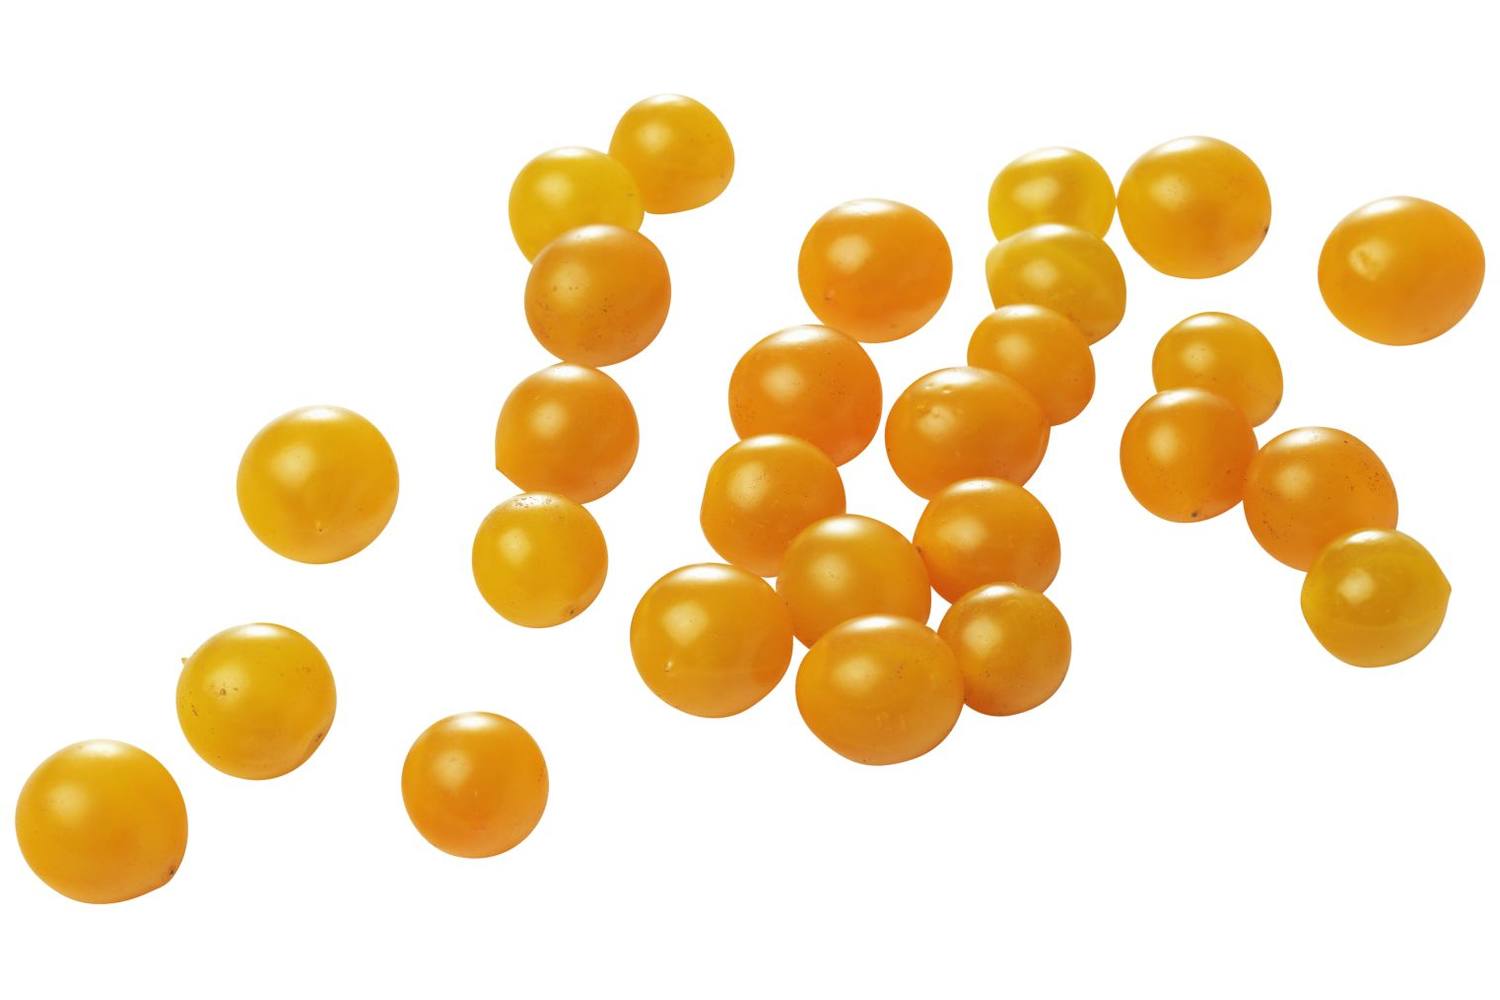 Tomberry tomaatjes geel 125gr stuk 1